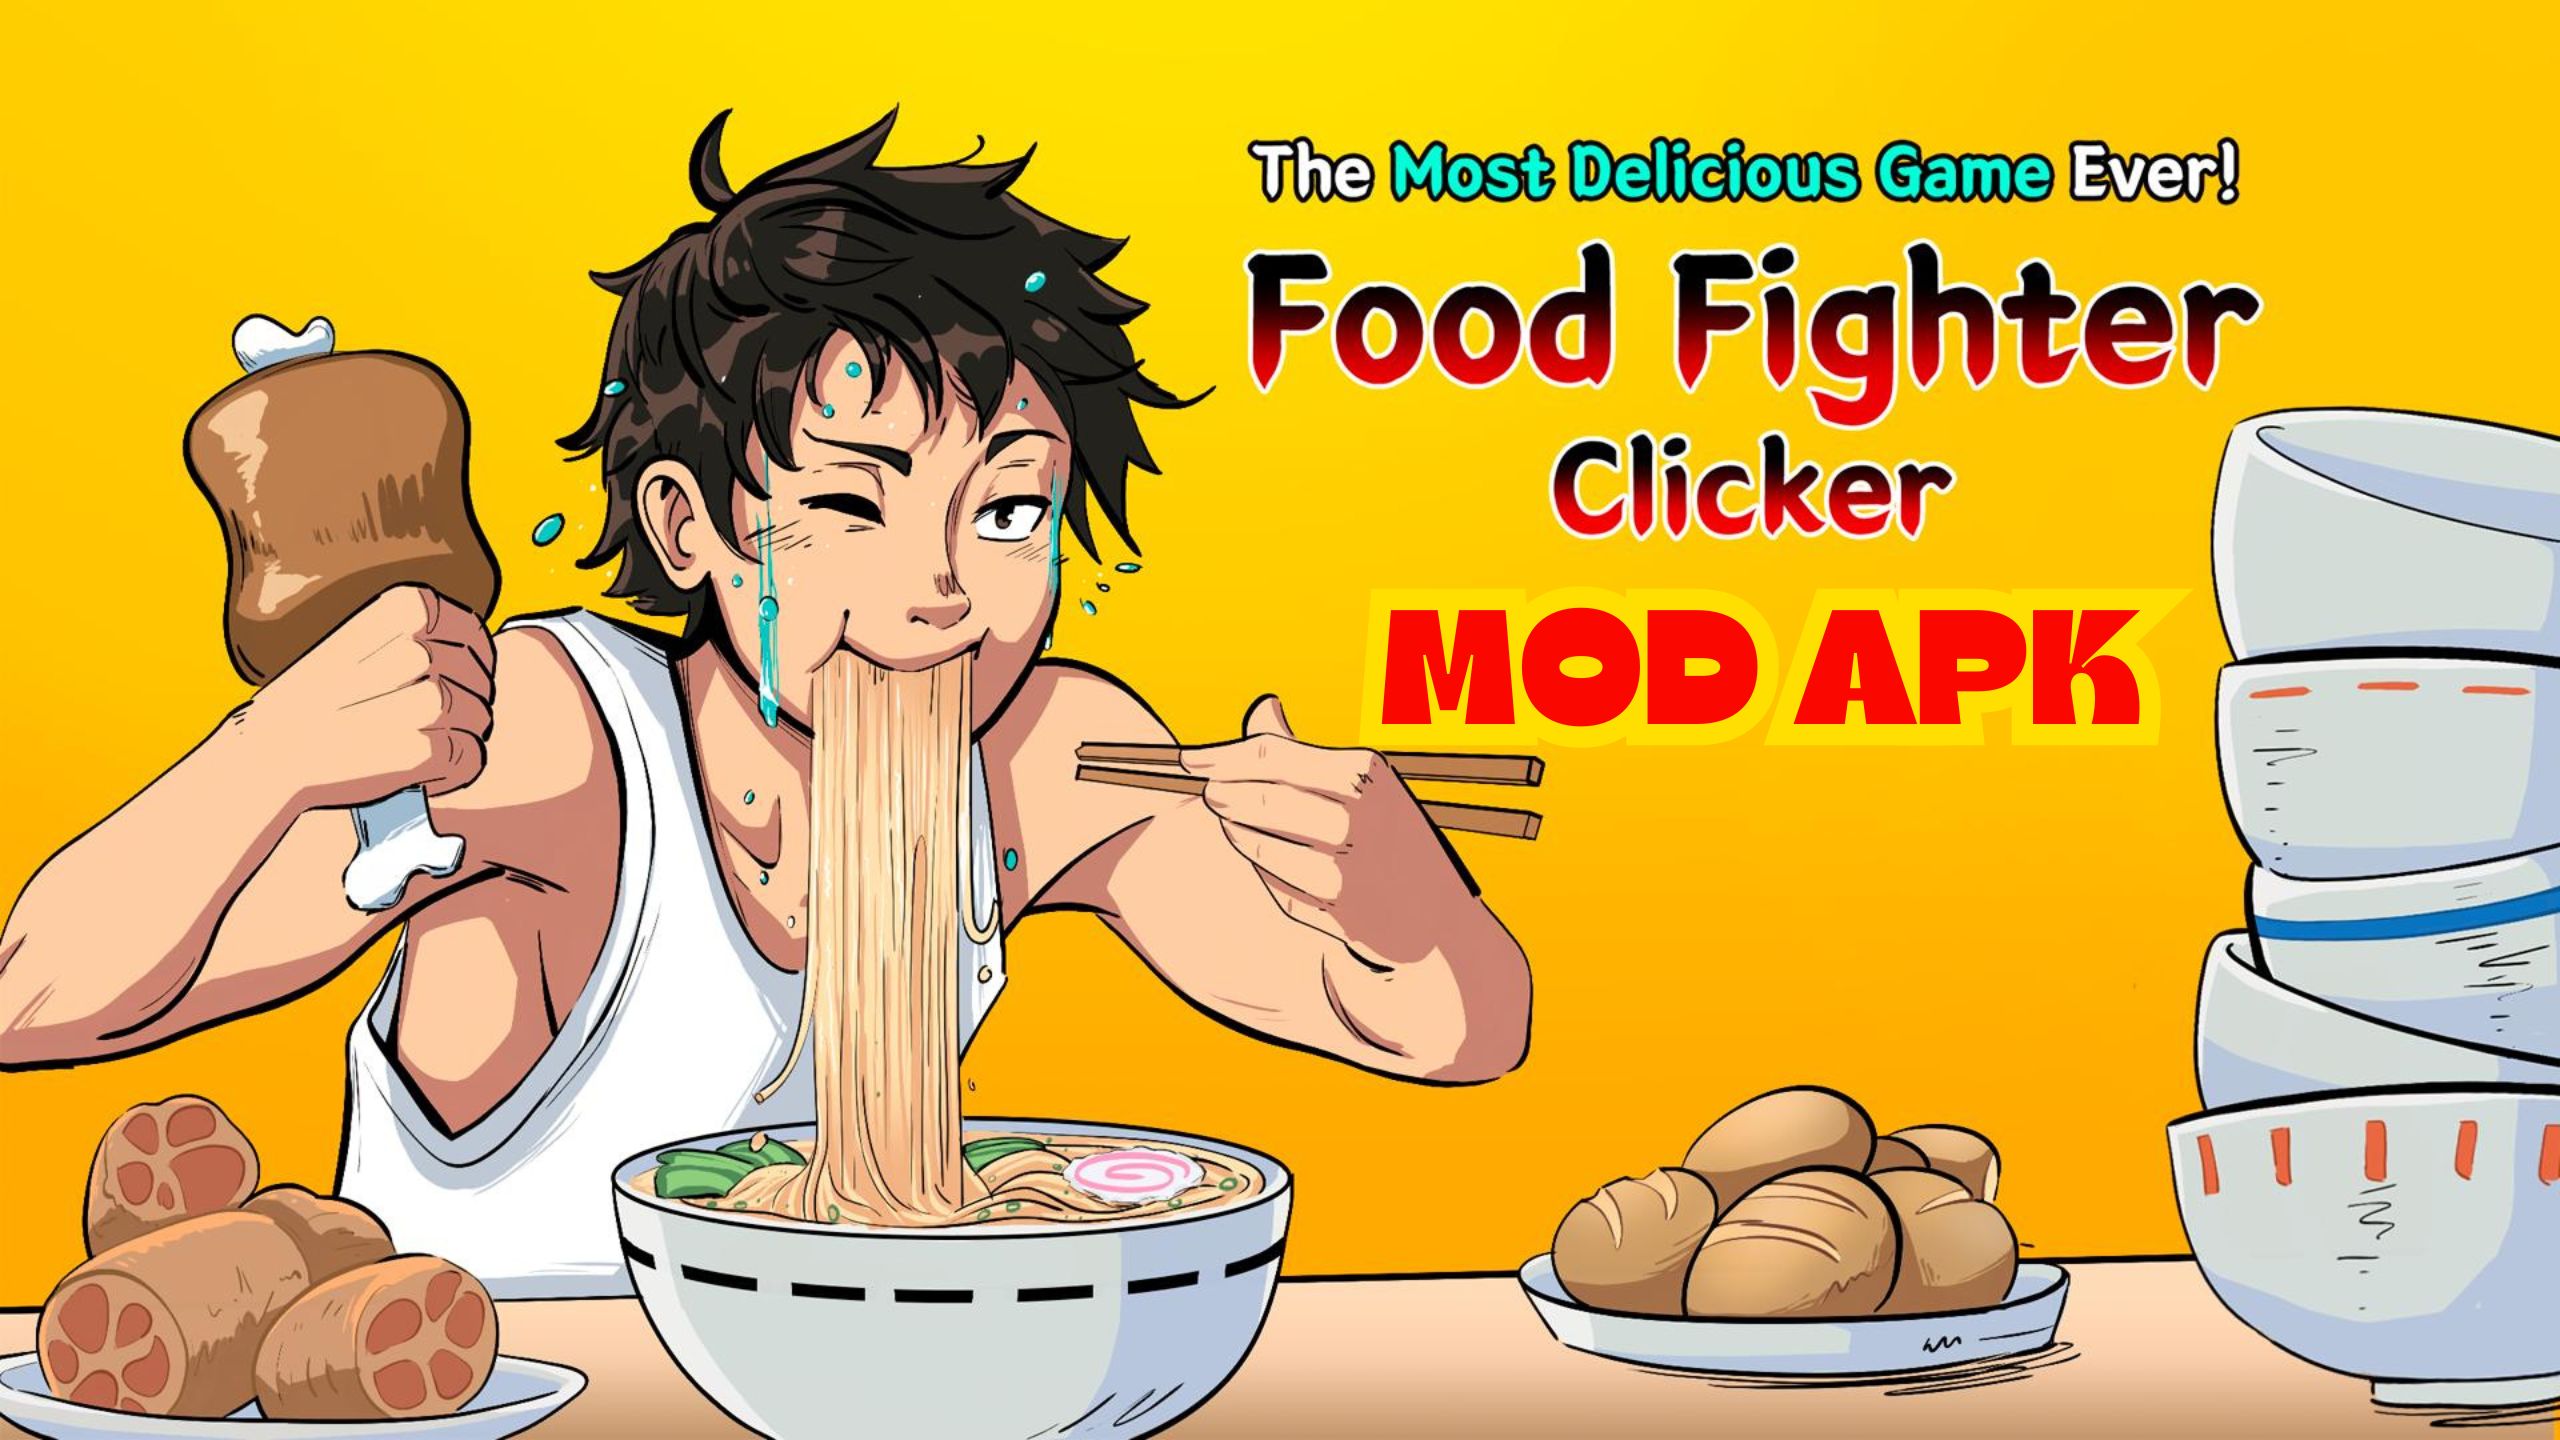 Food Fighter Clicker Mukbang